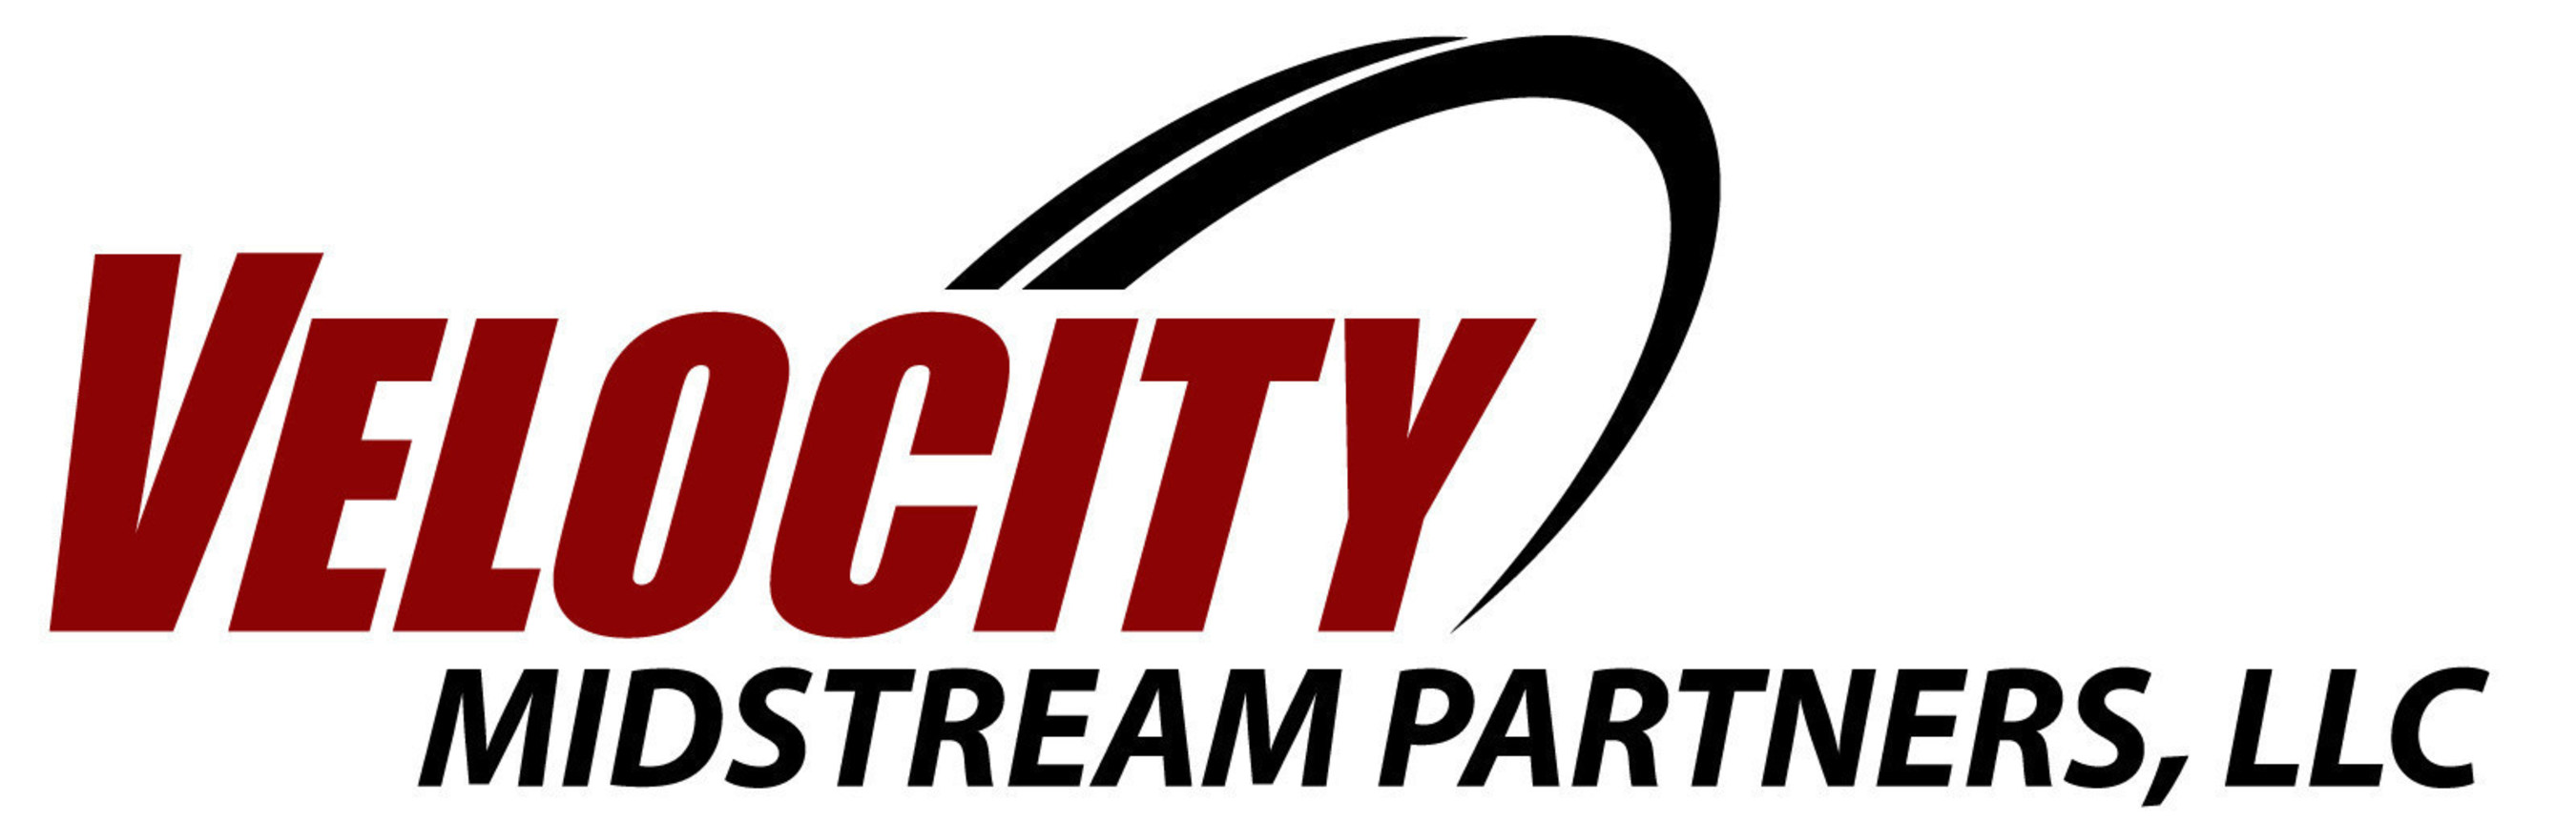 Velocity_Midstream_Partners_Logo